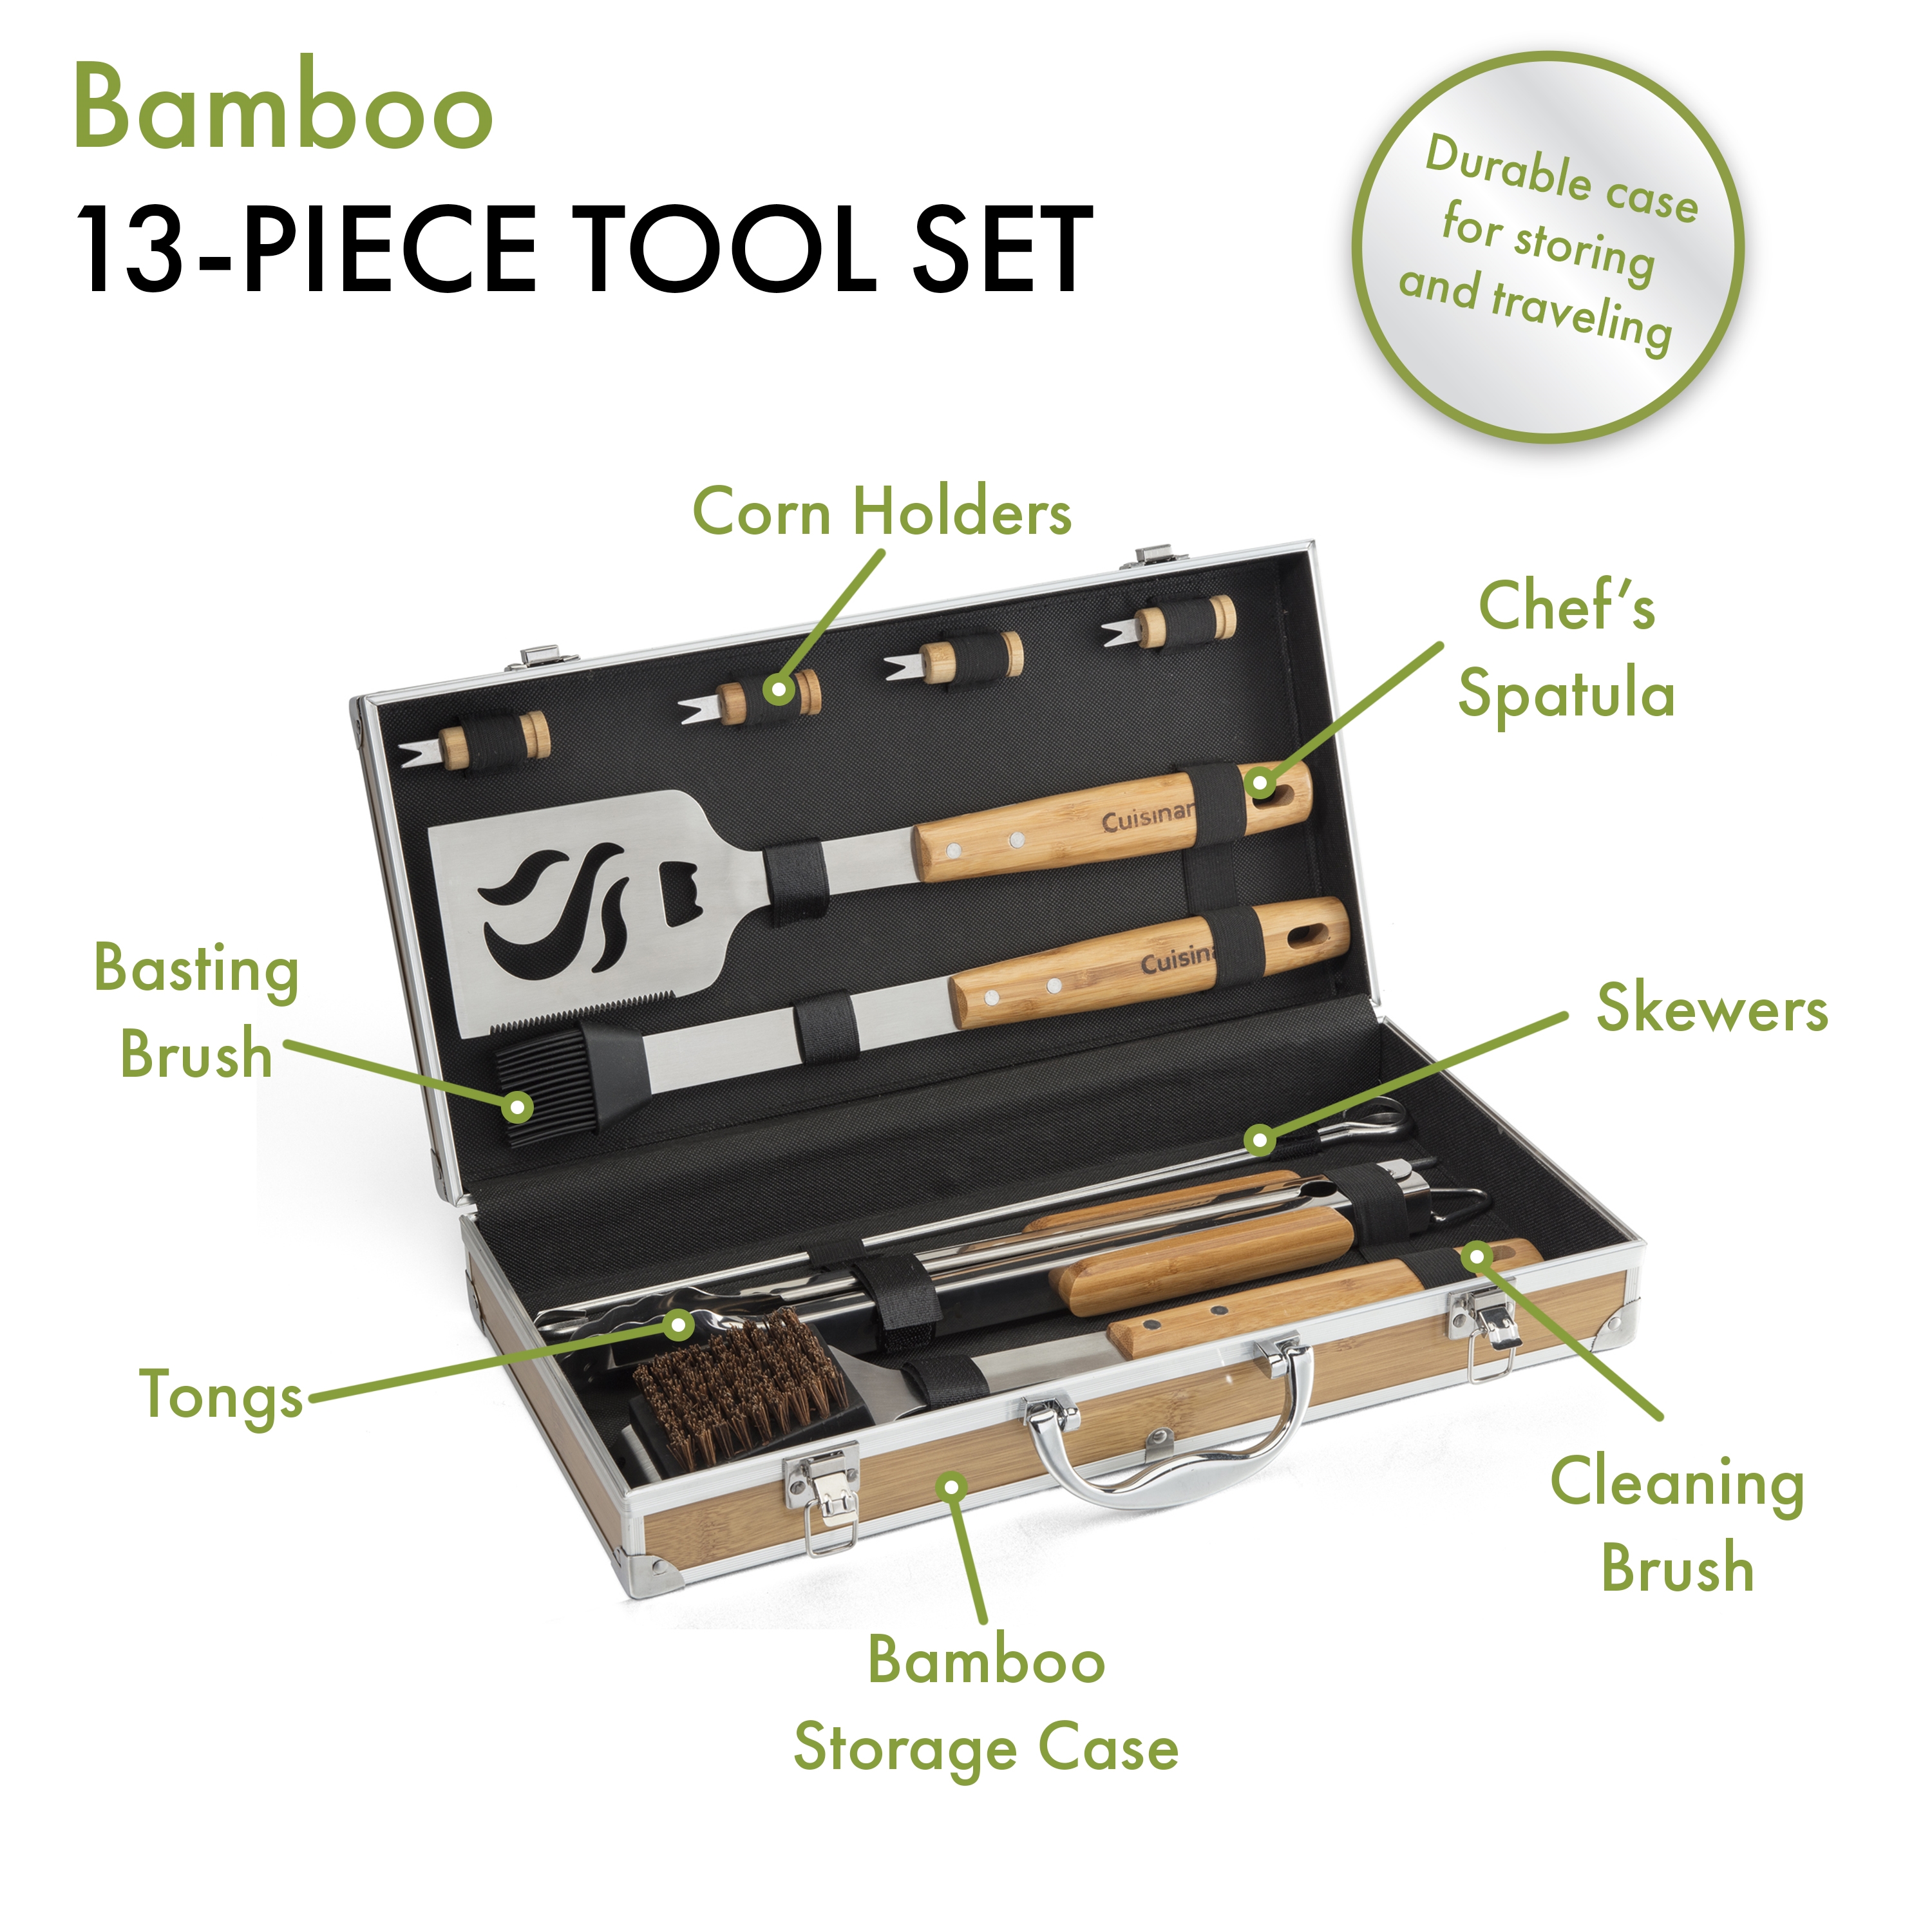 13-Piece Bamboo Tool Set